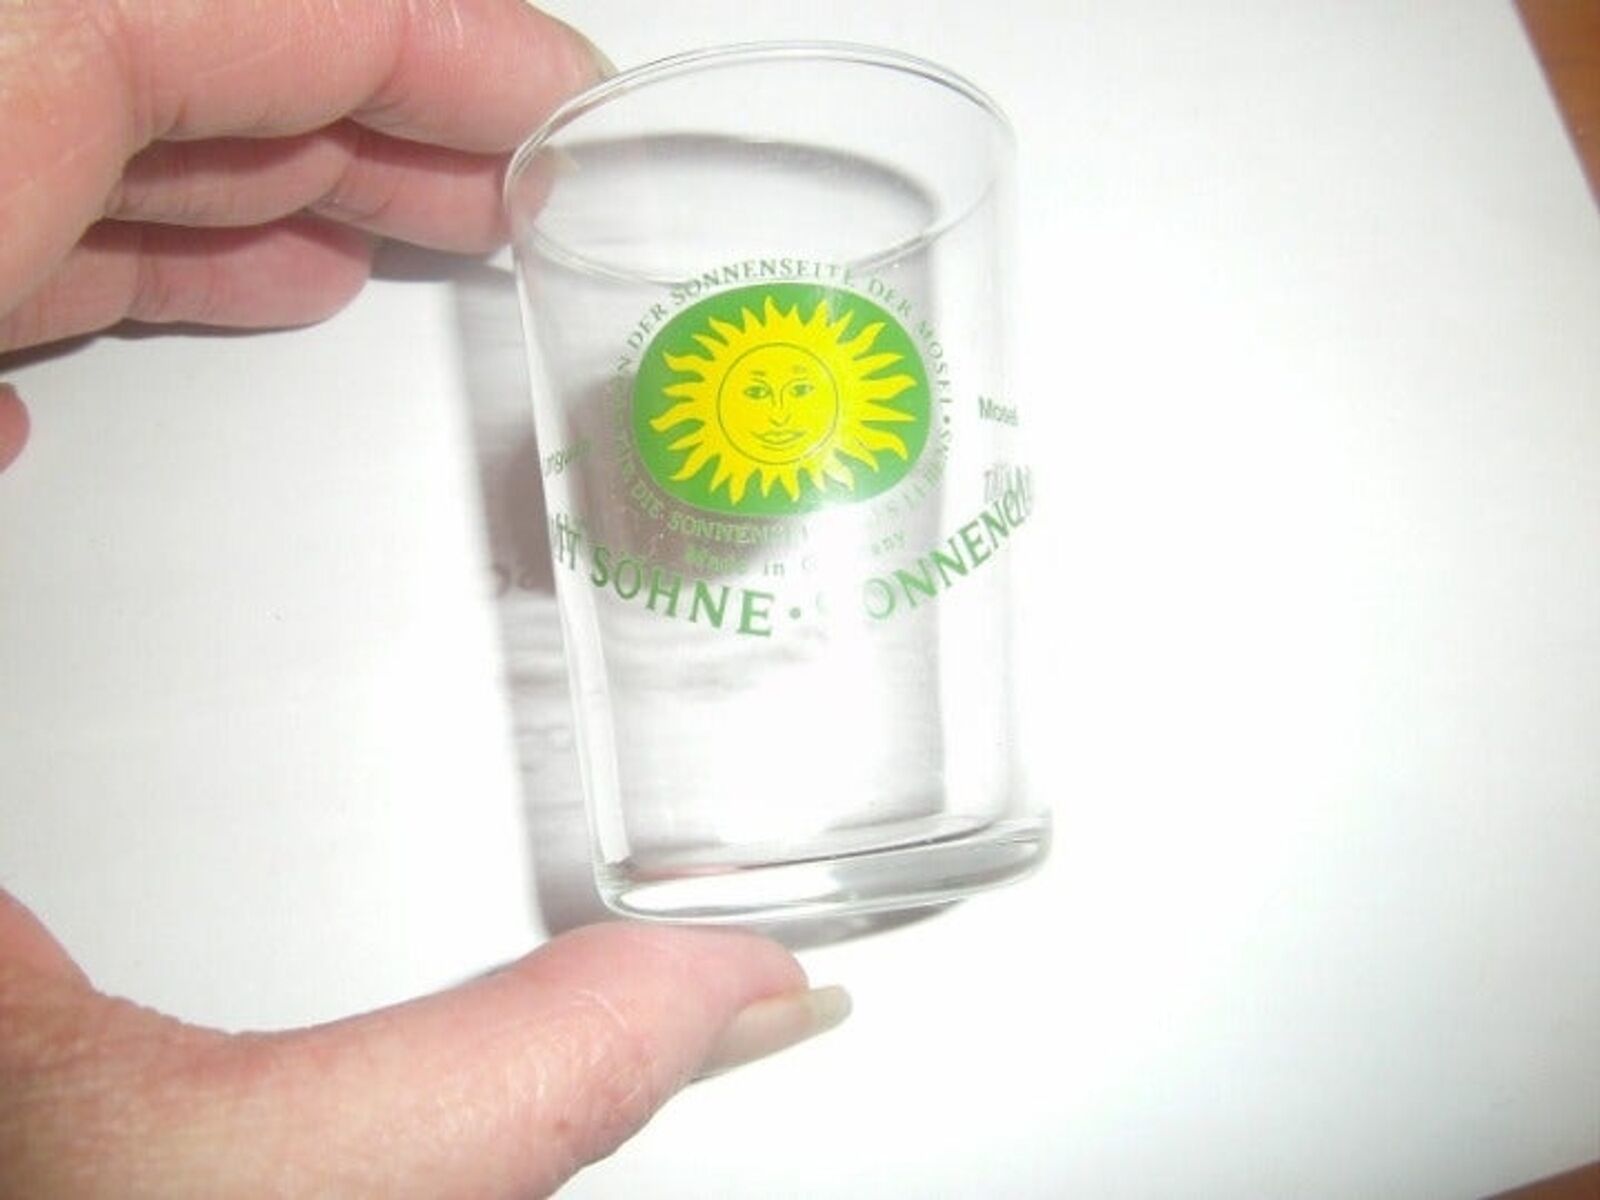 Primary image for SCHMITT SOHNE SONNENQUALITAT Shot Glass